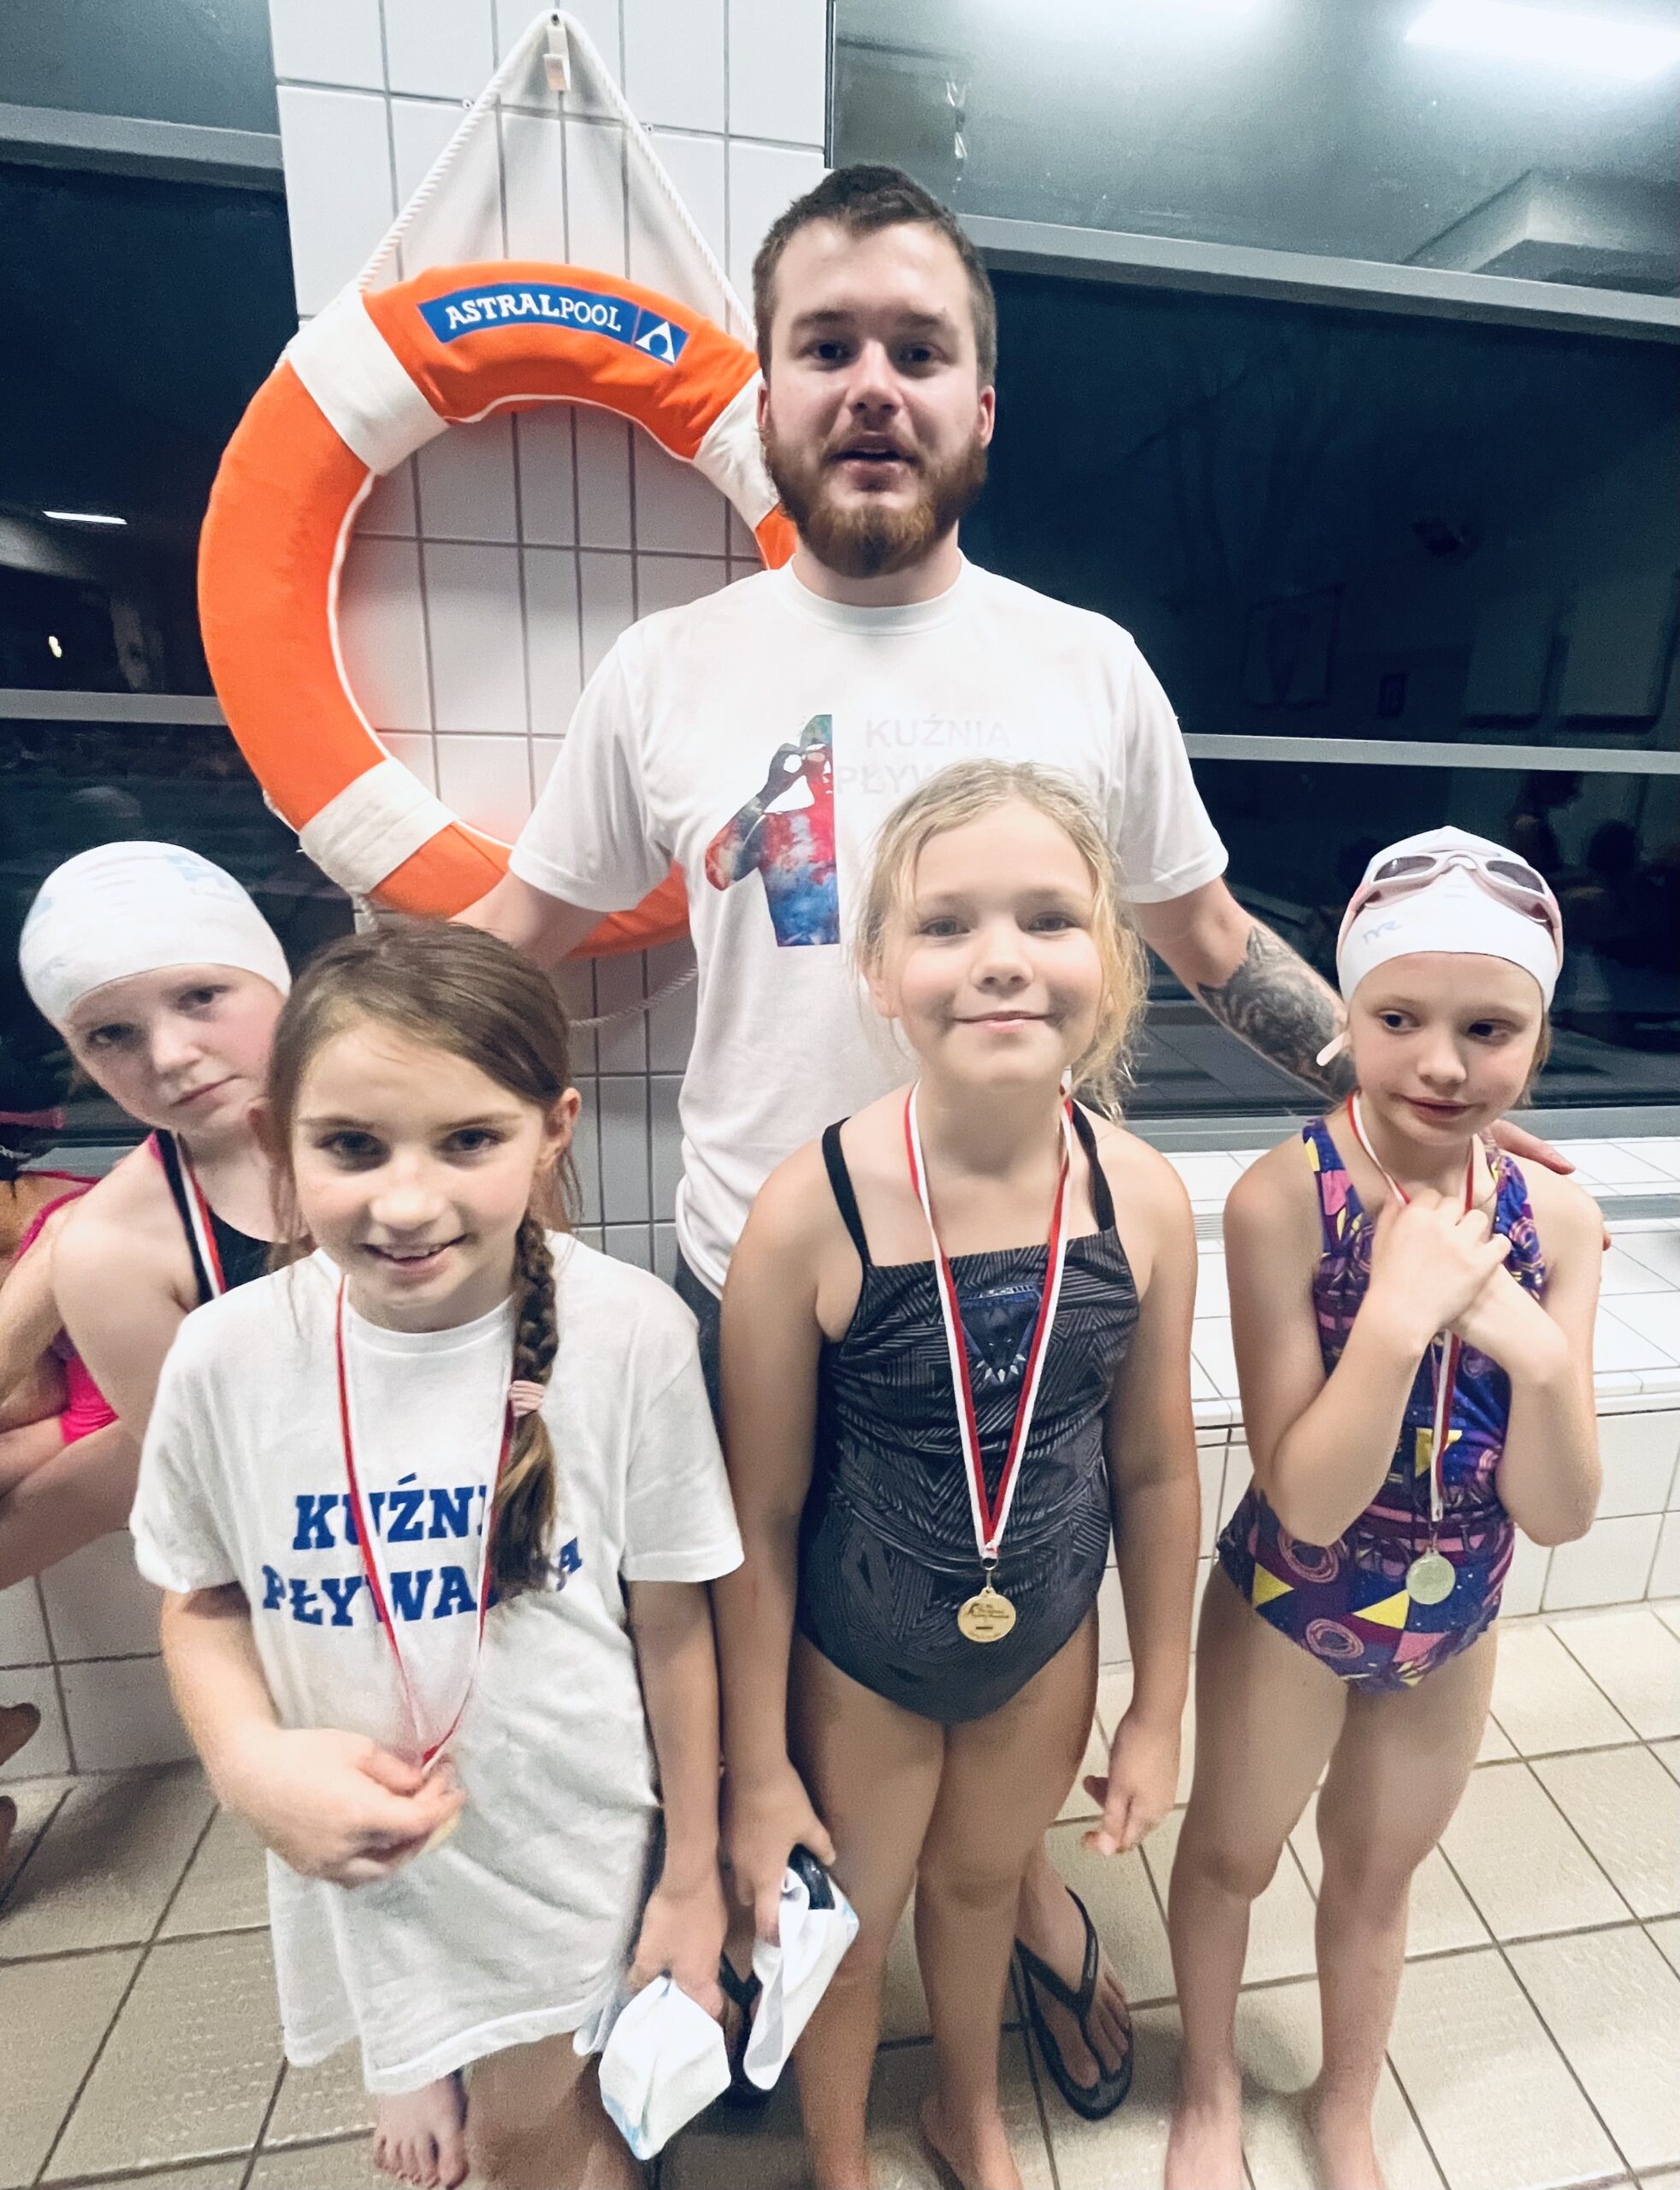 Dzieci z medalami na zawodach pływackich z trenerem